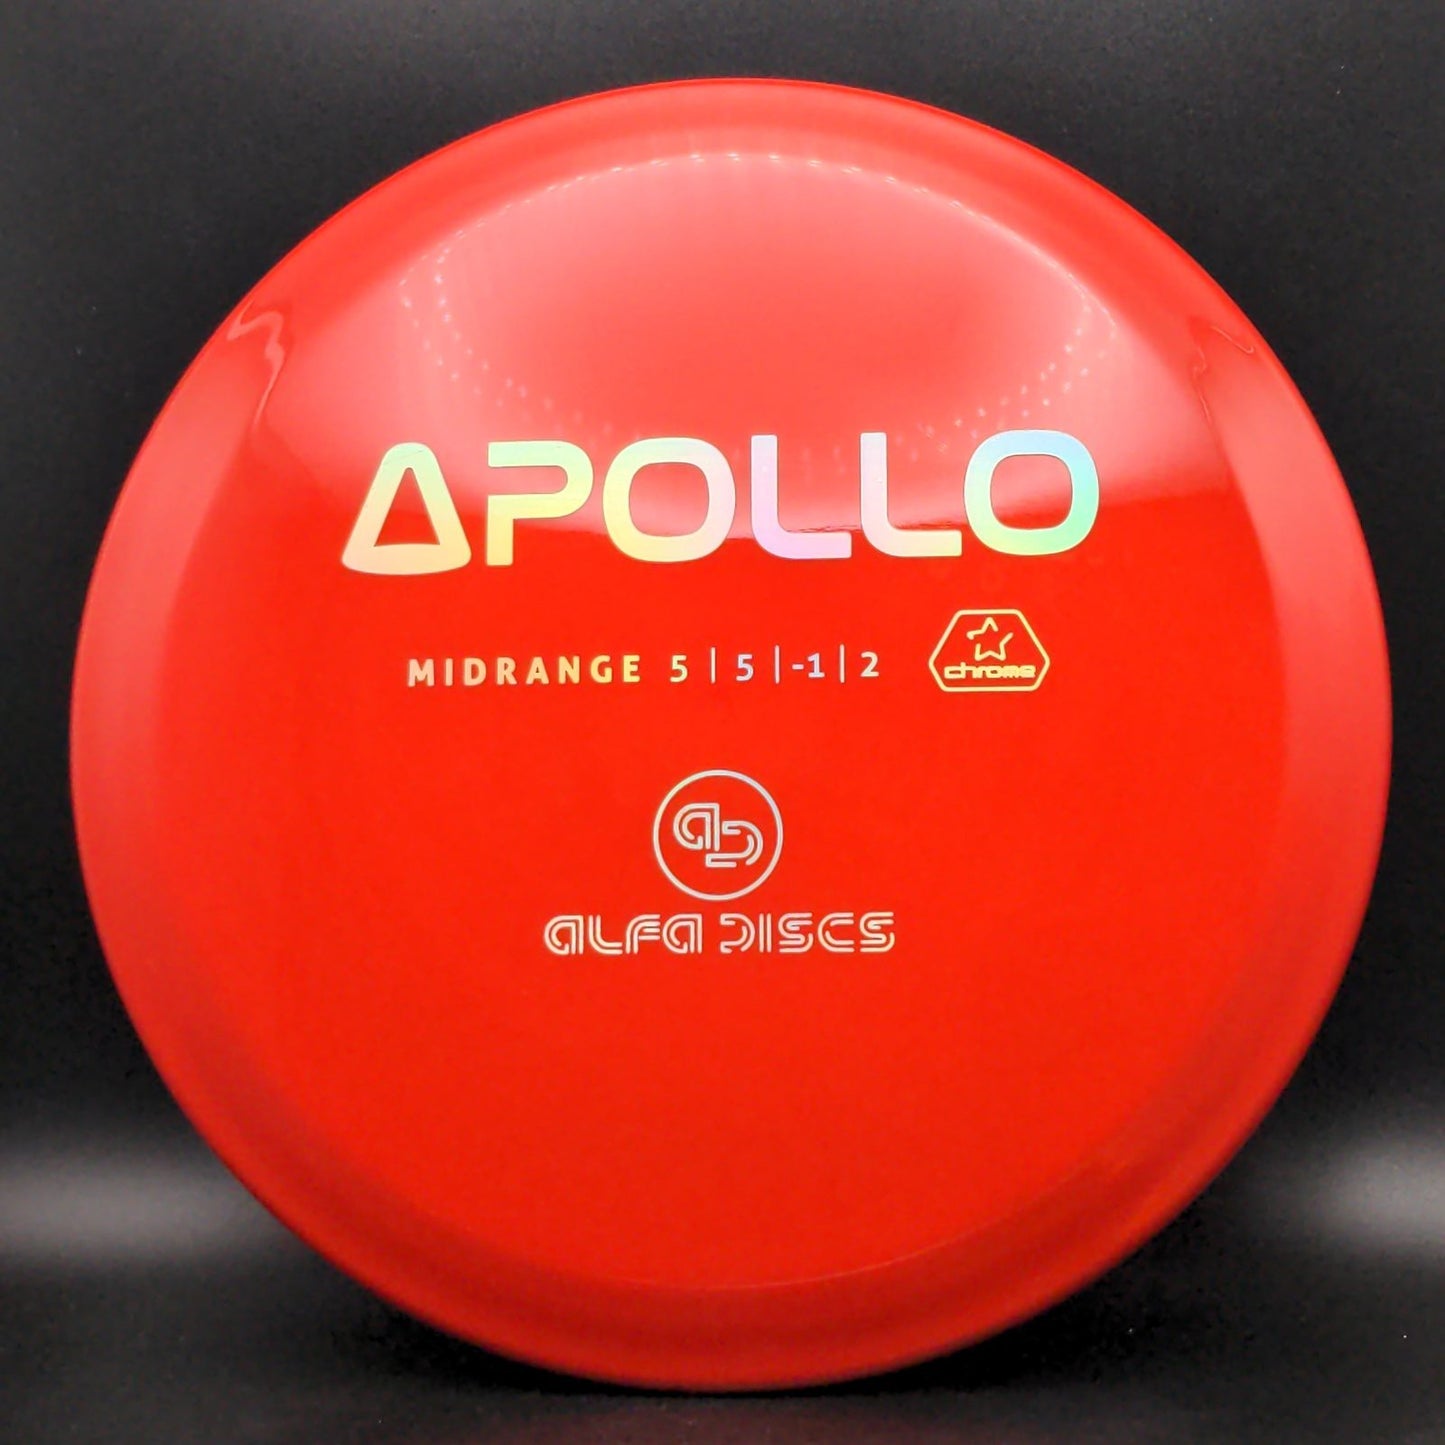 Chrome Apollo Midrange Alfa Discs